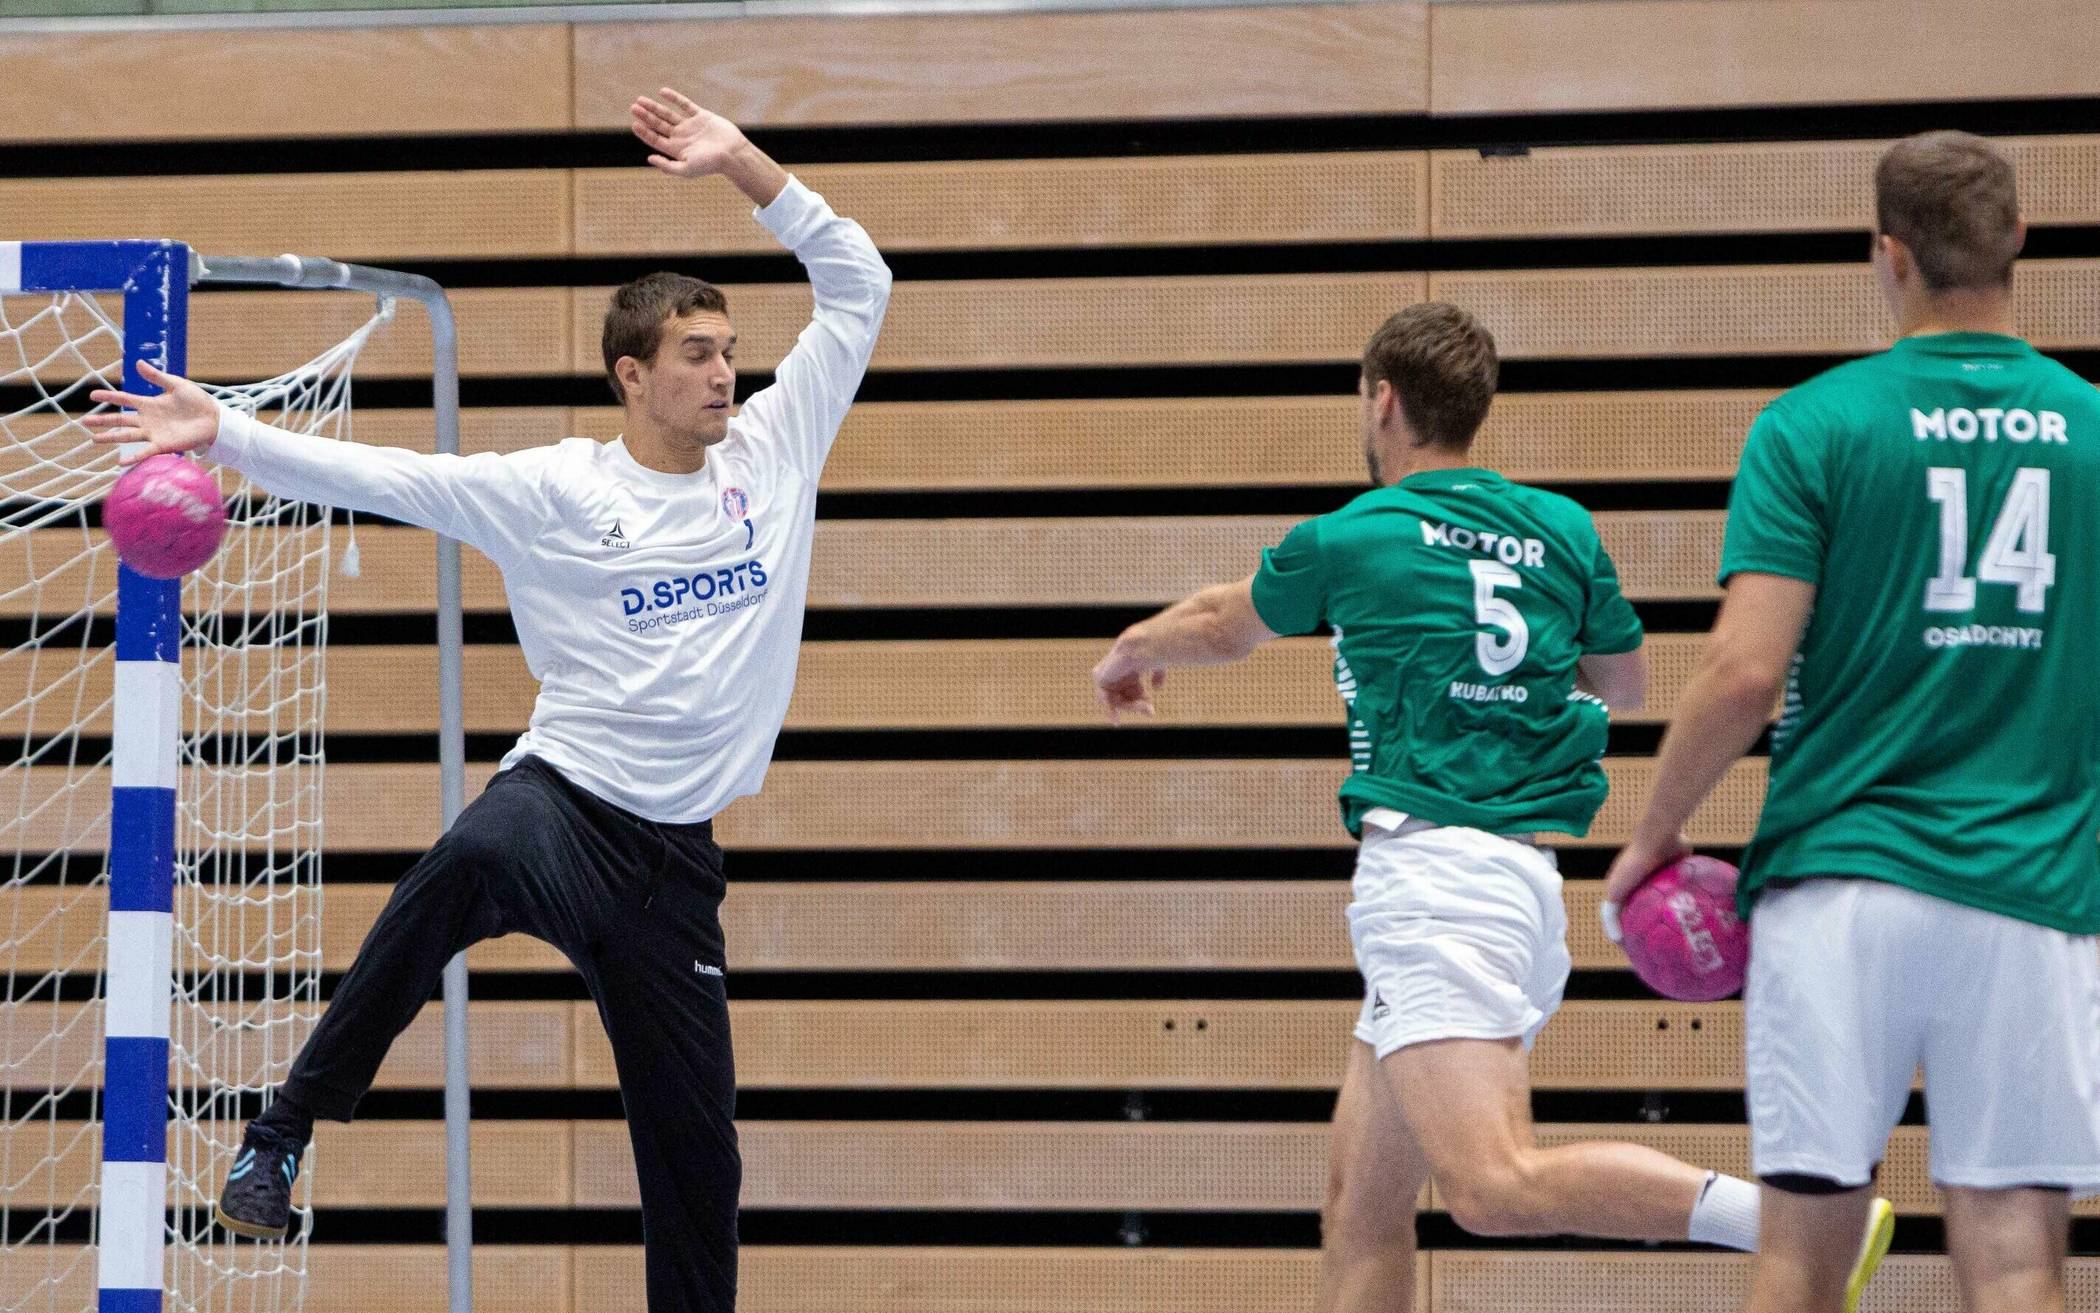 Das ukrainische Handball-Team aus Zaporozhye trainiert und spielt in der neuen Saison der 2. Handball-Bundesliga im Castello in Düsseldorf.